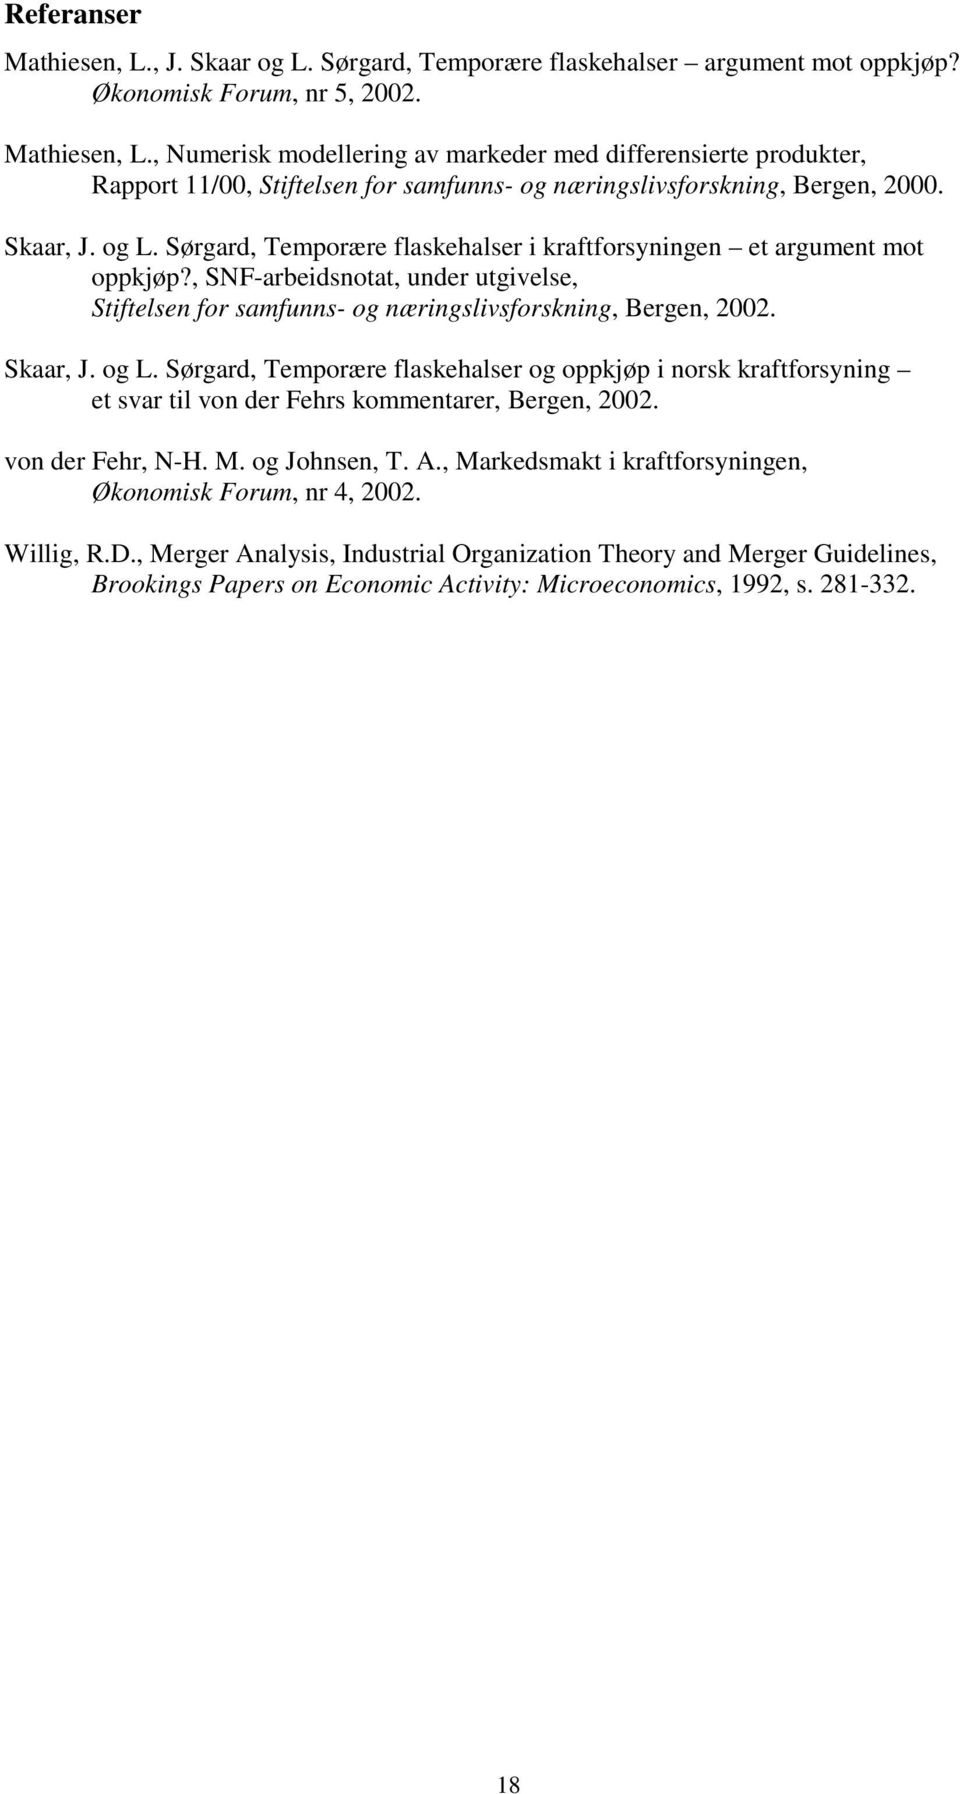 Skaar, J. og L. Sørgard, Temporære flaskehalser og oppkjøp i norsk kraftforsyning et svar til von der Fehrs kommentarer, Bergen, 2002. von der Fehr, N-H. M. og Johnsen, T. A.